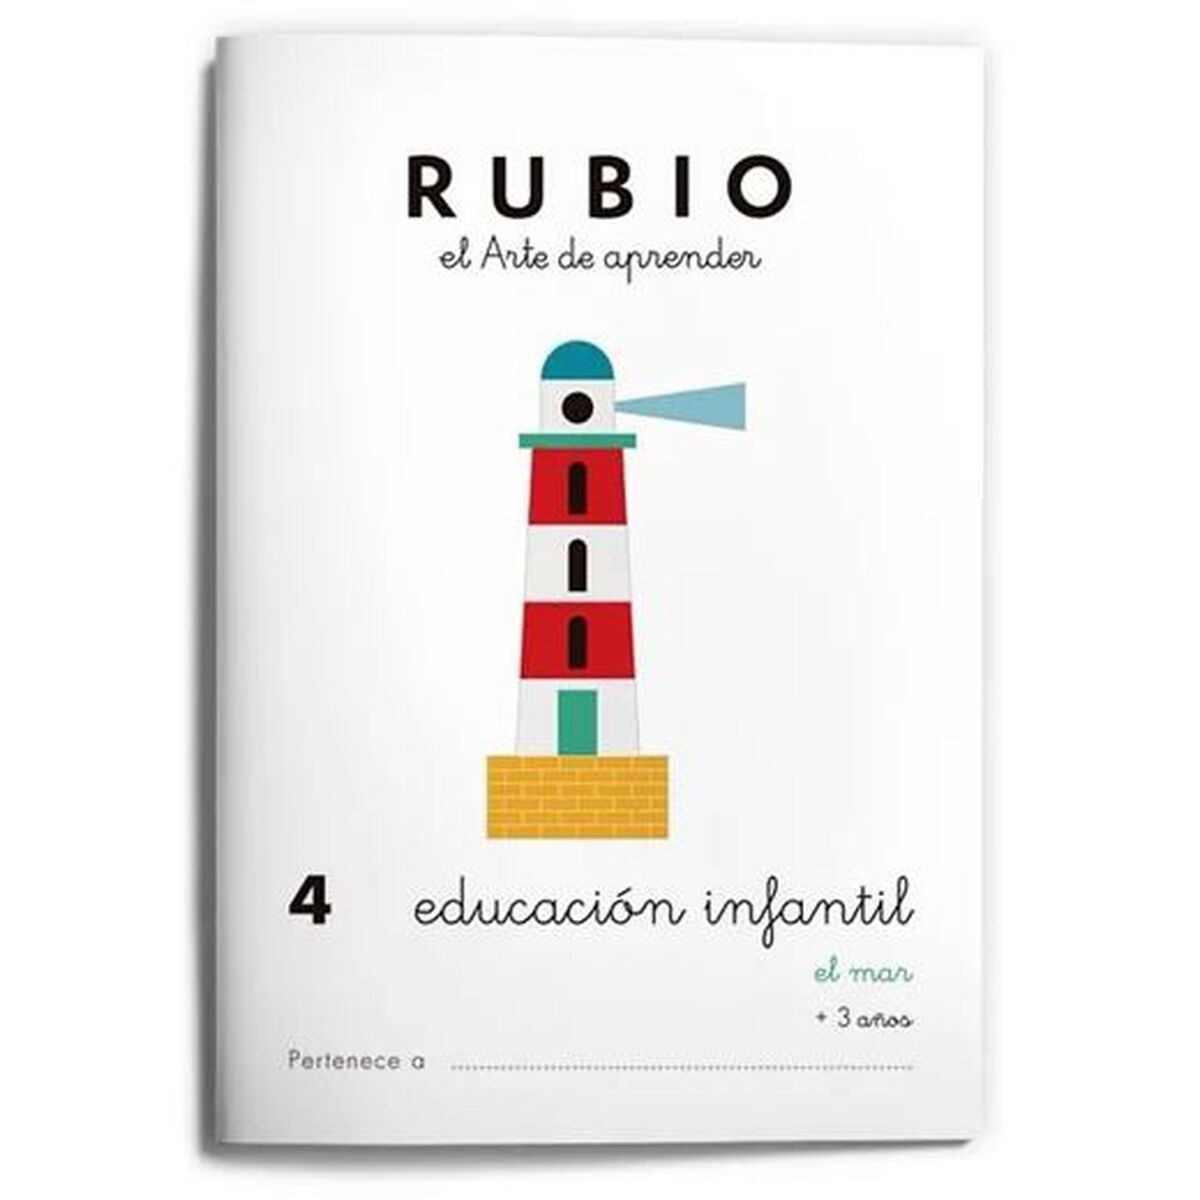 Notizbuch für die frühkindliche Bildung Rubio Nº4 A5 Spanisch (10 Stück)